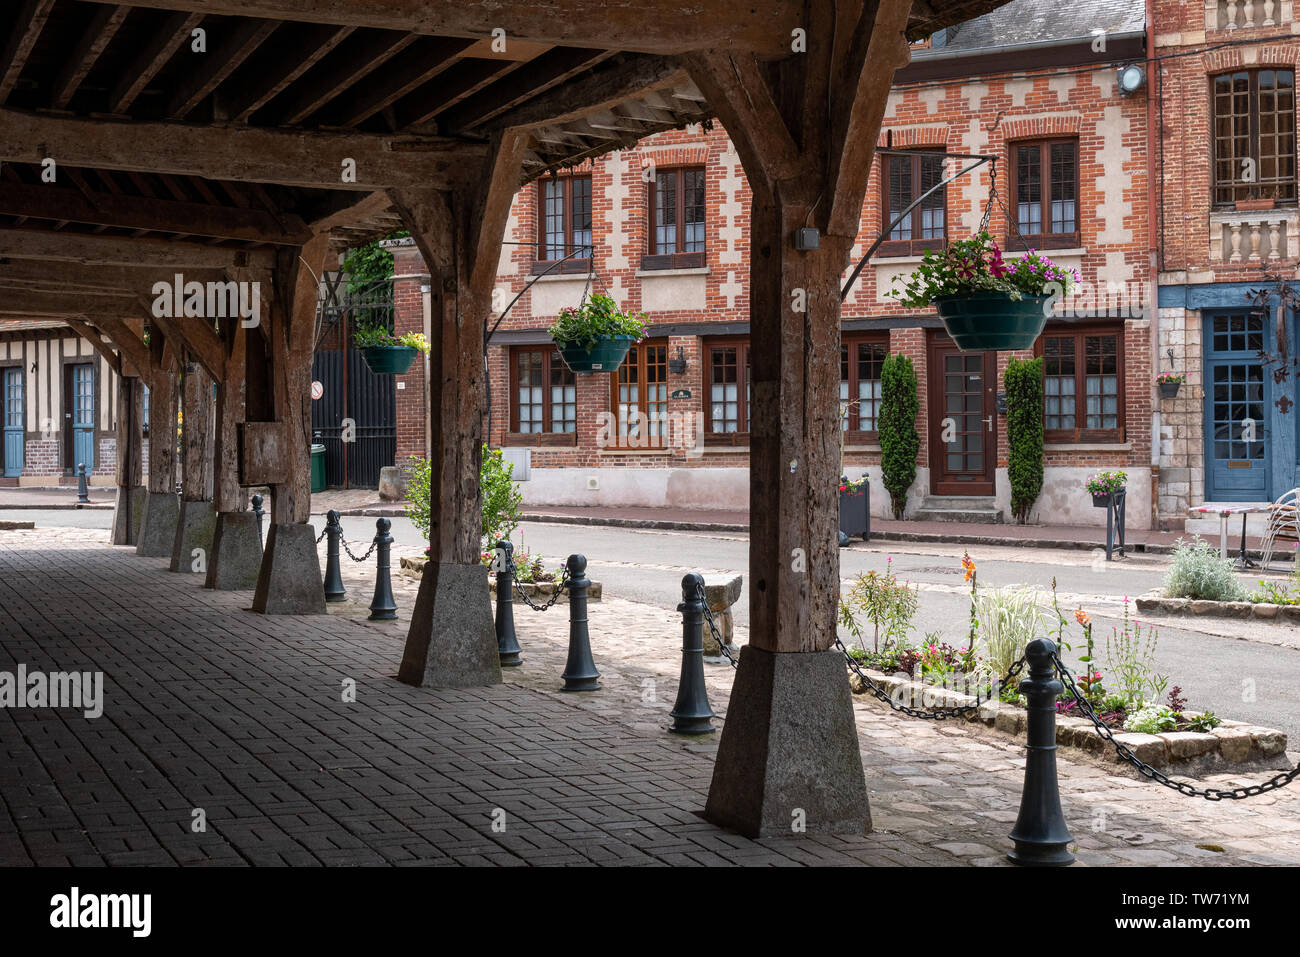 Lyons la Forêt - Junio 3, 2019: edificios y calles de la ciudad medieval Foto de stock